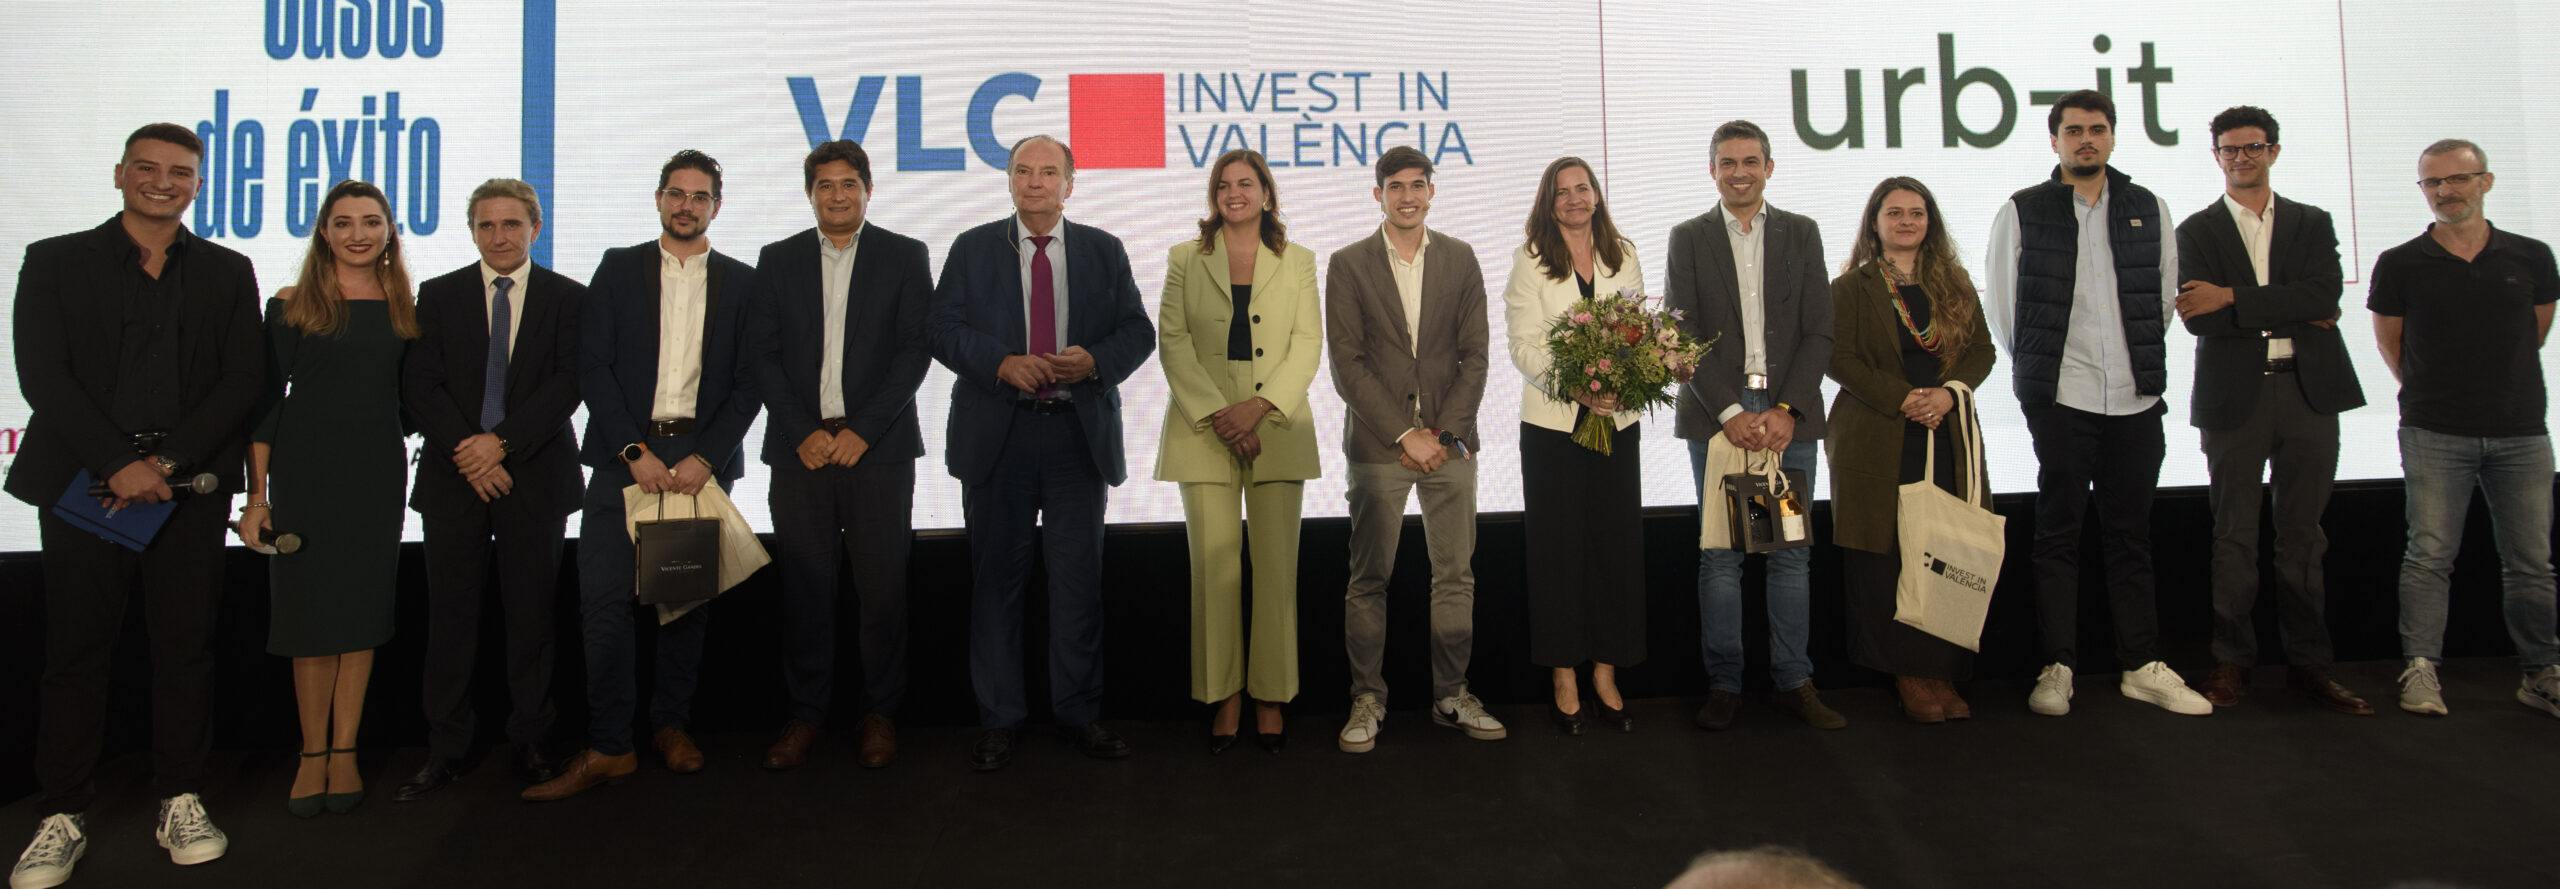 Invest in València atrae en su primer año a 10 empresas que suponen una inversión en la ciudad de 5,2M € y la creación de 520 empleos